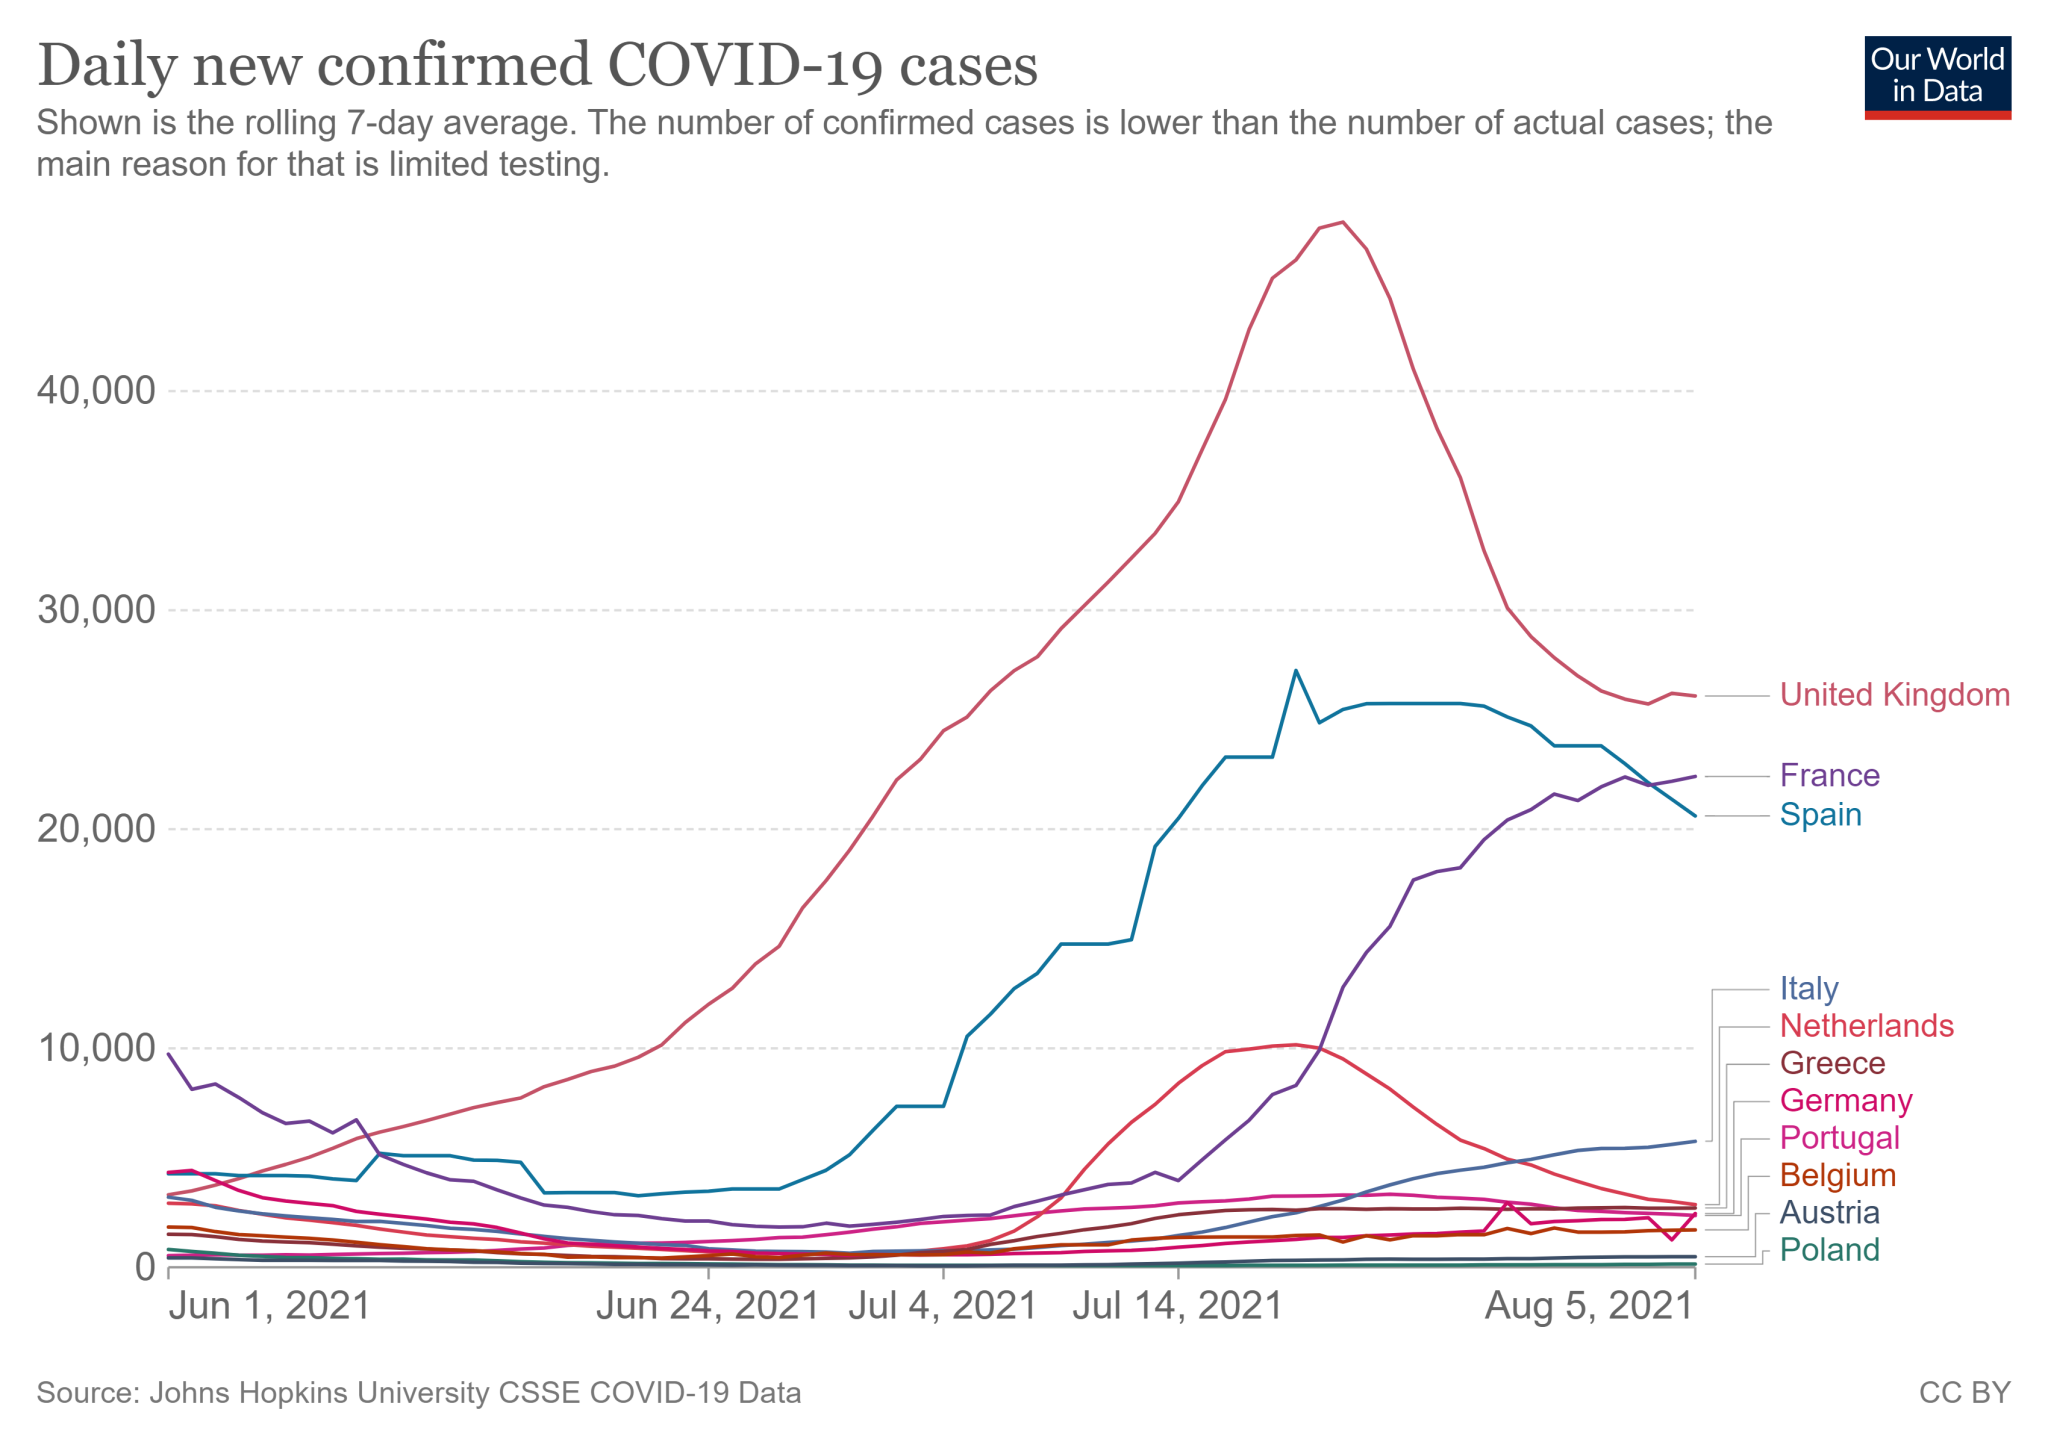 Promedio semanal de nuevos casos de COVID-19 en países europeos seleccionados del 1 de junio al 5 de agosto de 2021 